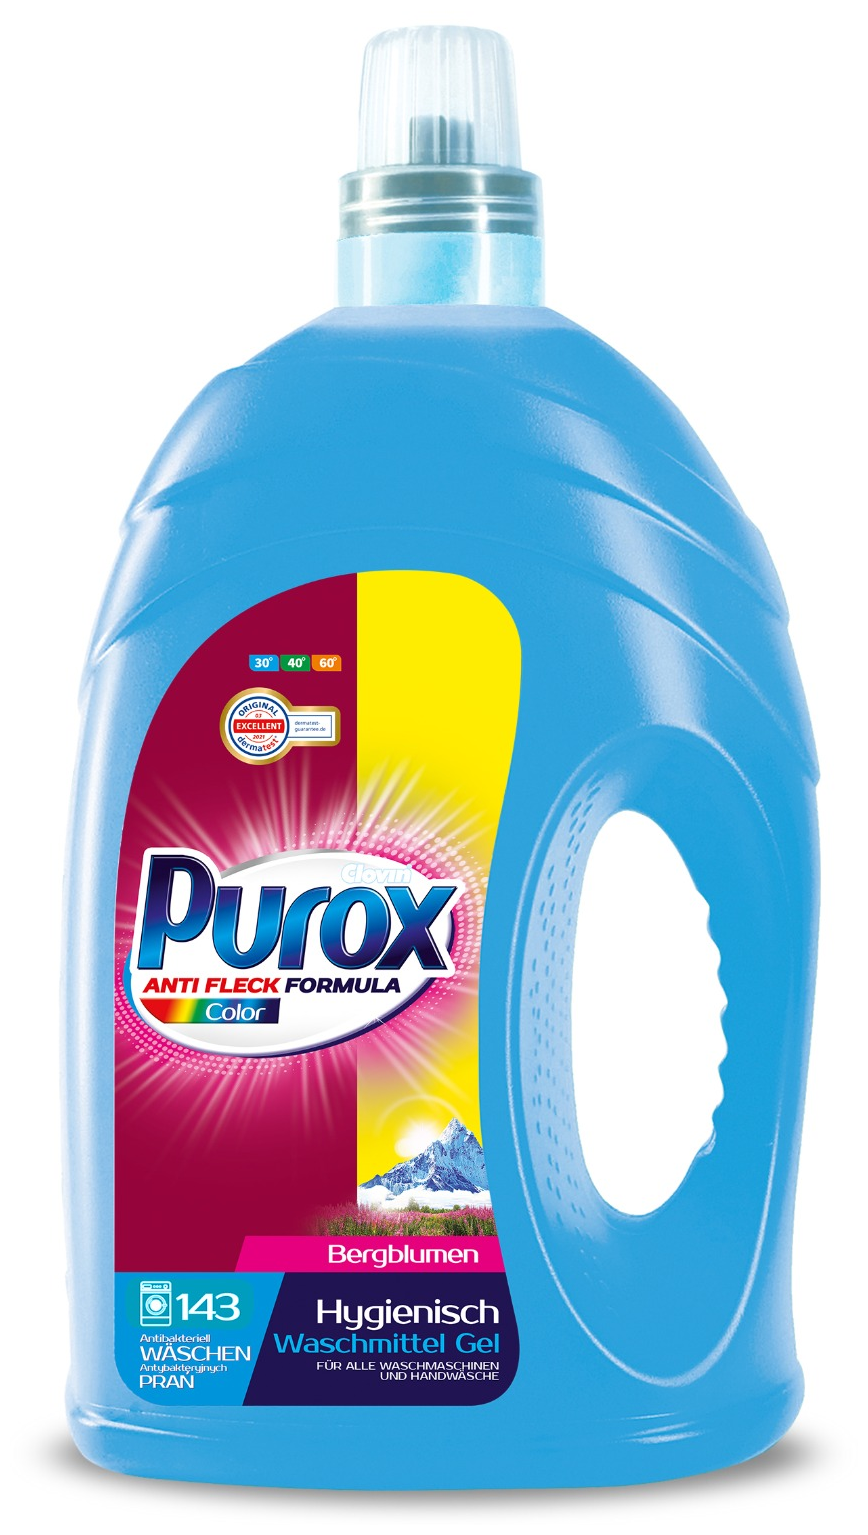    4,3  Purox Color - 143  ()